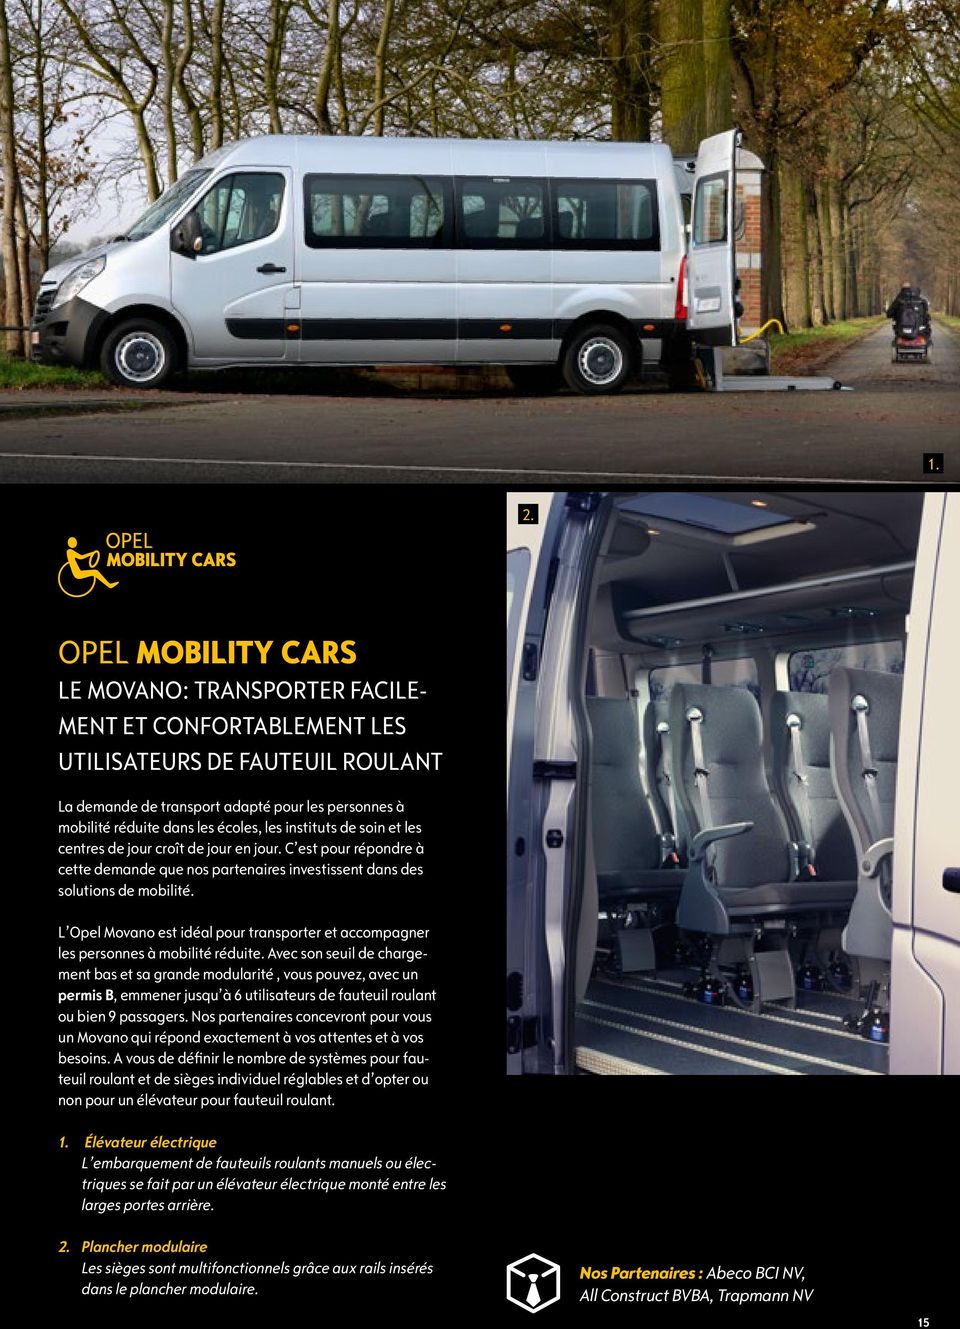 L Opel Movano est idéal pour transporter et accompagner les personnes à mobilité réduite.